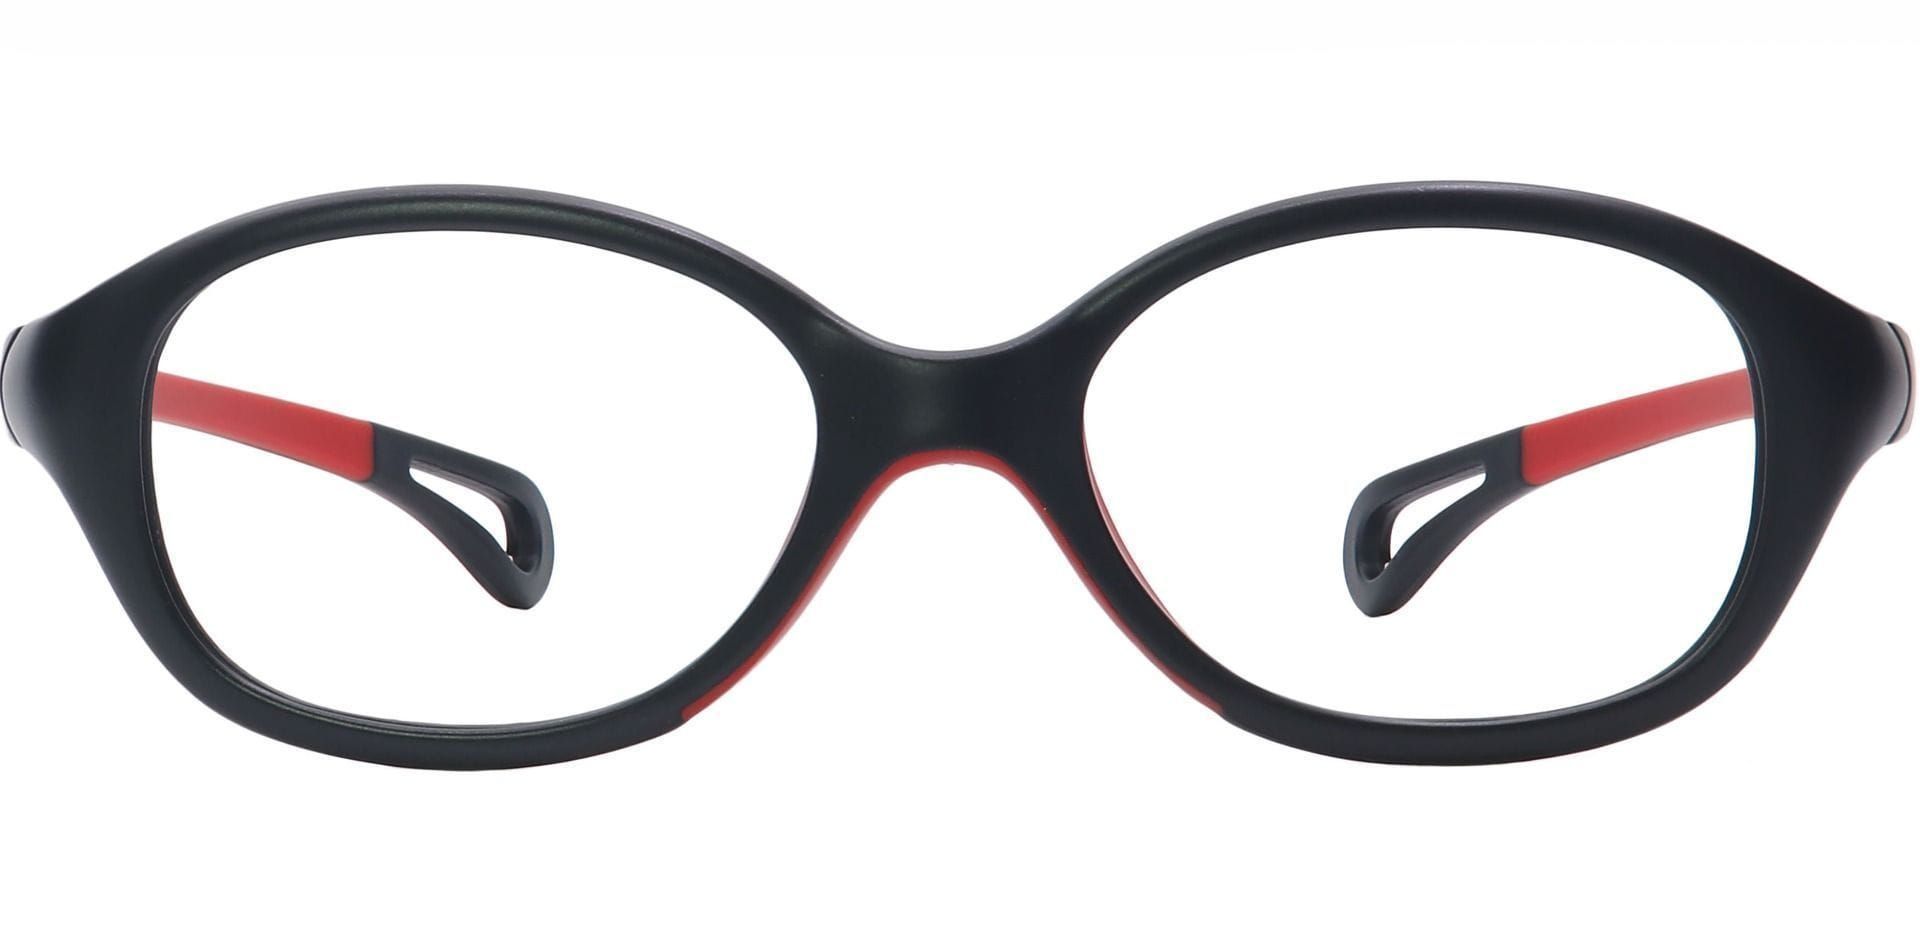 Quirk Oval Eyeglasses Frame - Black